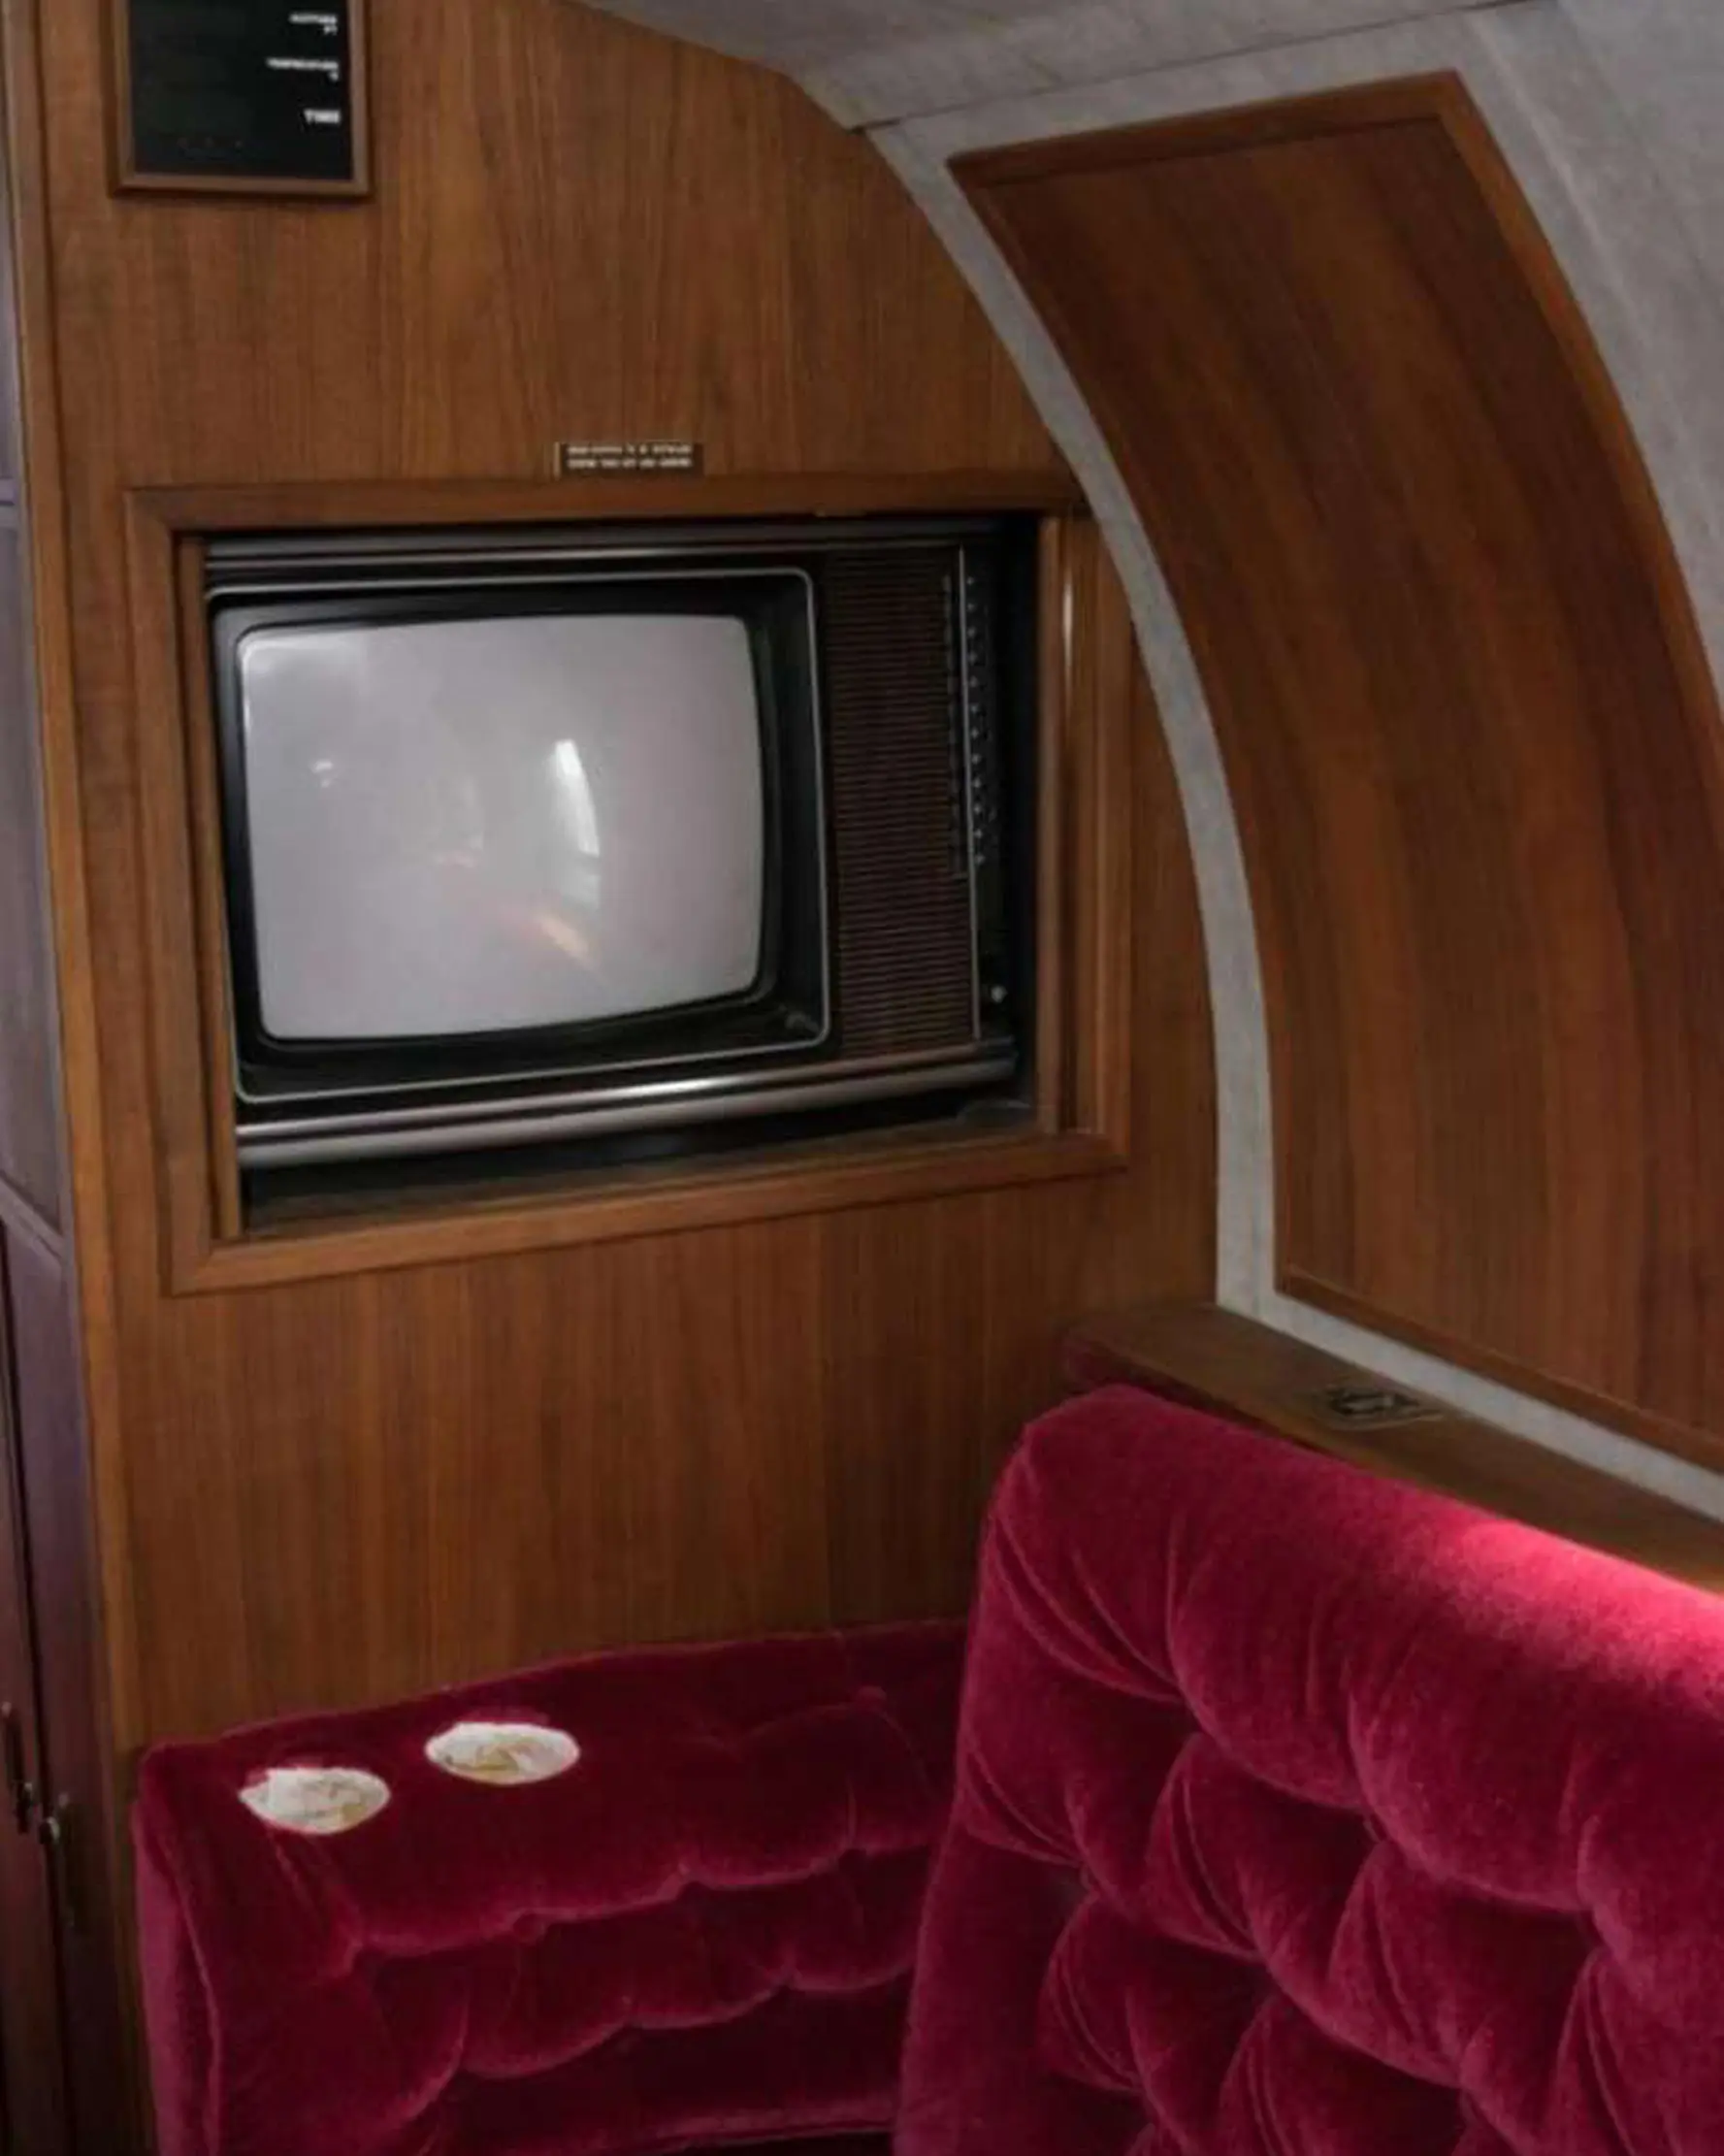 Televisi yang berada dalam jet pribadi yang pernah dimiliki oleh Elvis Presley yang berada di landasan pacu di New Mexico, AS. Interior pesawat ini di desain dengan warna emas, ornamen kayu dan jok beludru merah. (GWS Auctions, Inc. via AP)